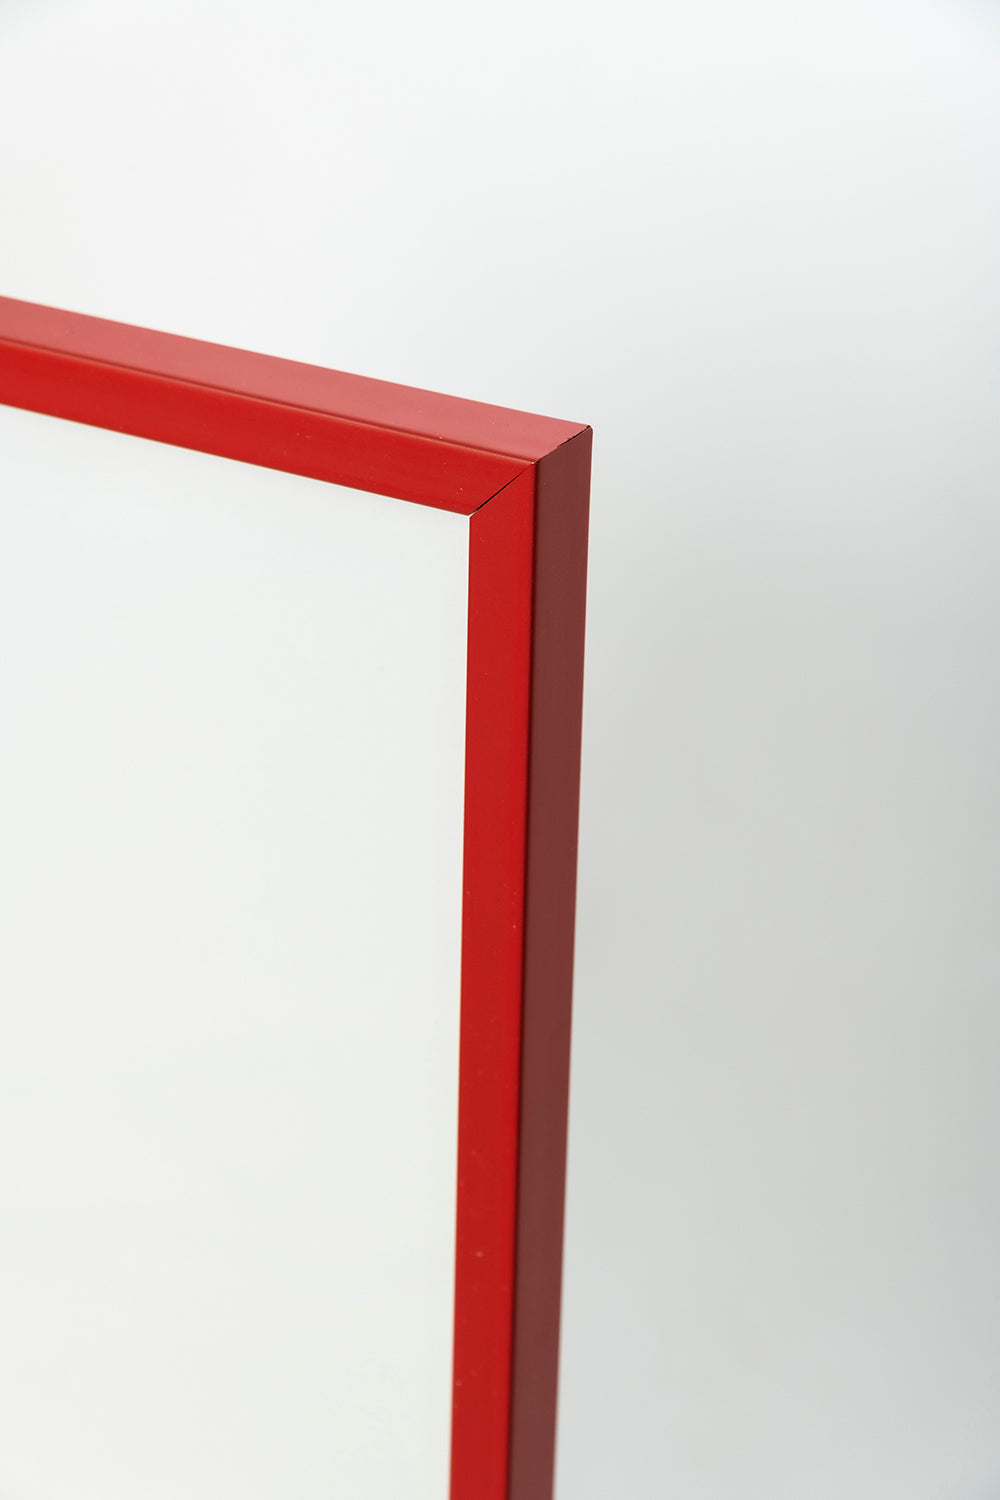 Red Frame with Plexiglass